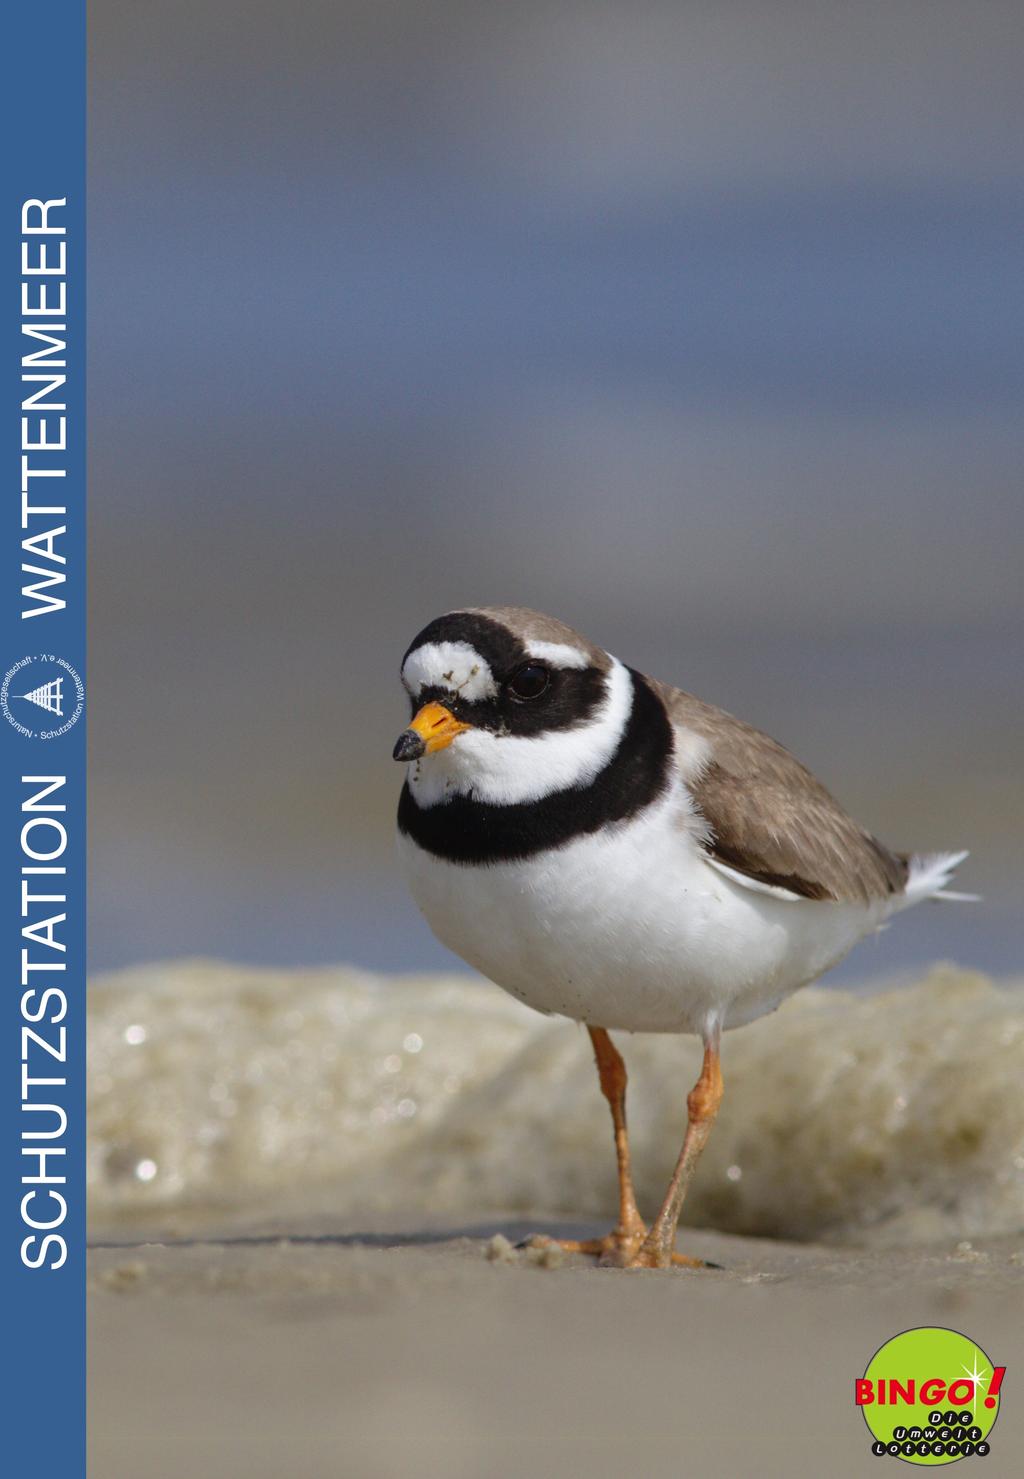 . Unsere Brutvögel im Wattenmeer Schulprojekt gefördert durch die Bingo-Umweltlotterie Projektbericht von